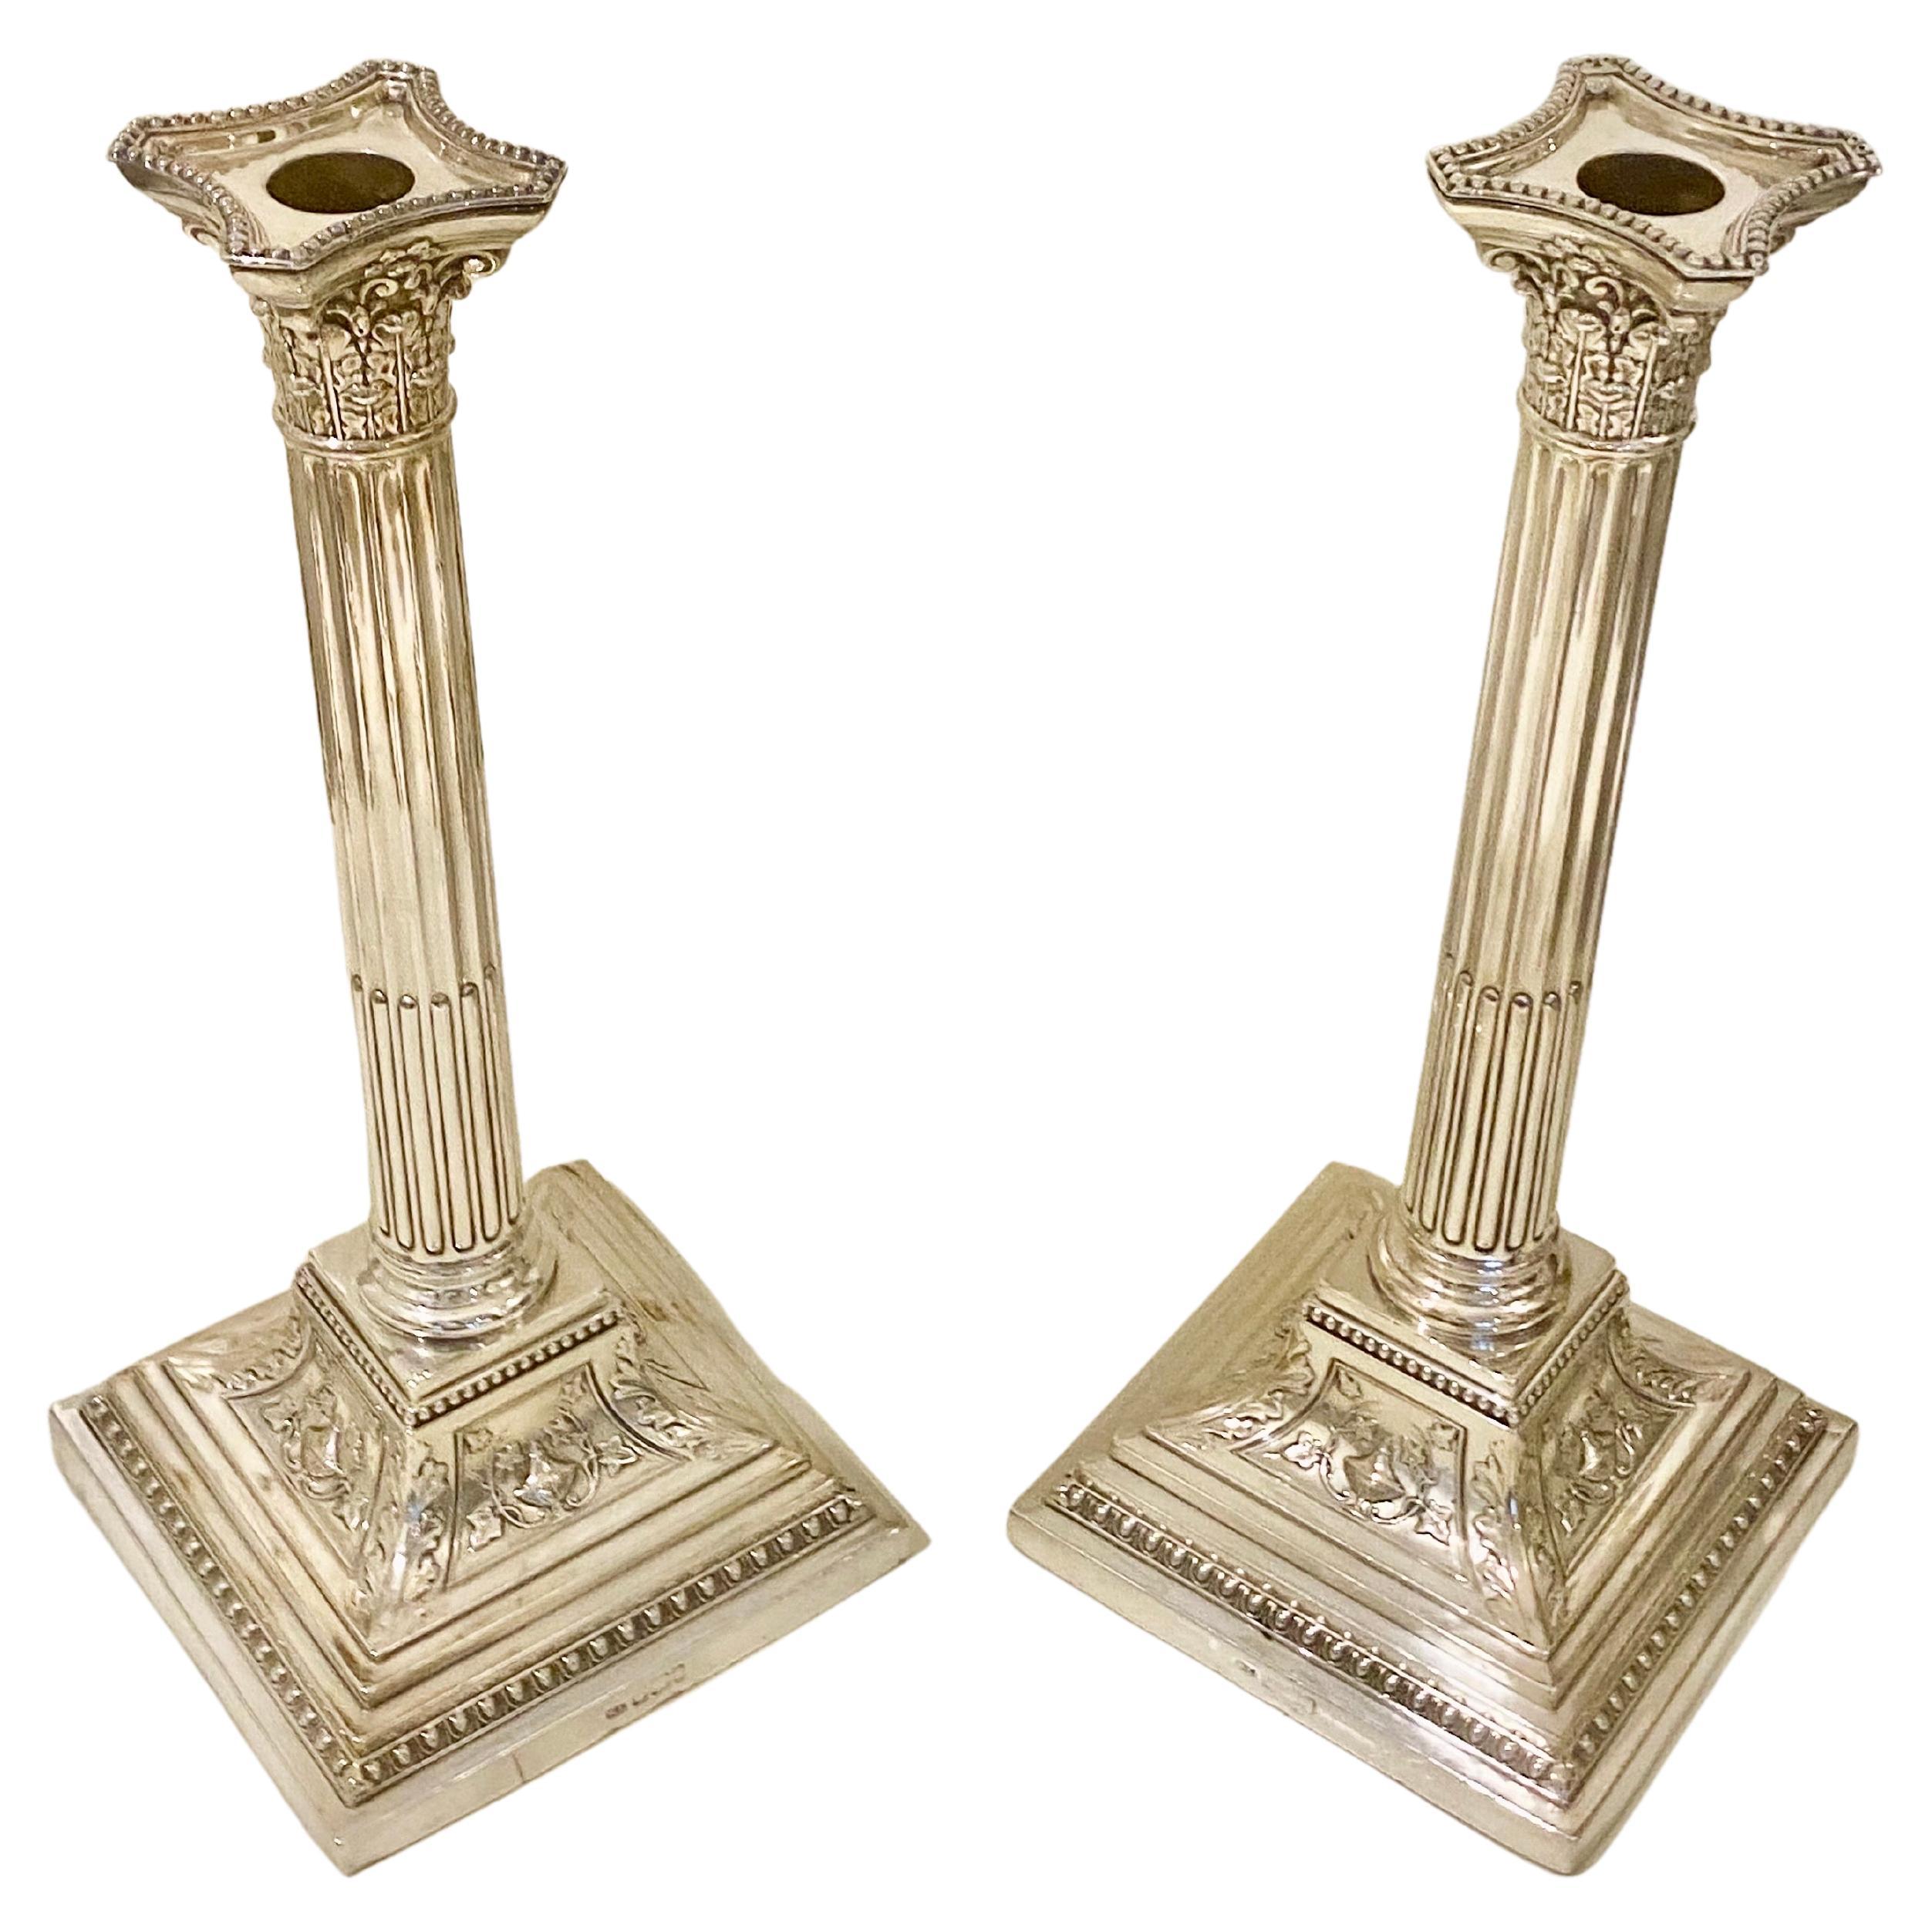 Une impressionnante paire de chandeliers à colonne corinthienne en argent sterling, de style néoclassique, de l'époque victorienne. 
Ces exceptionnels chandeliers anciens en argent sterling de l'époque victorienne sont dotés de colonnes